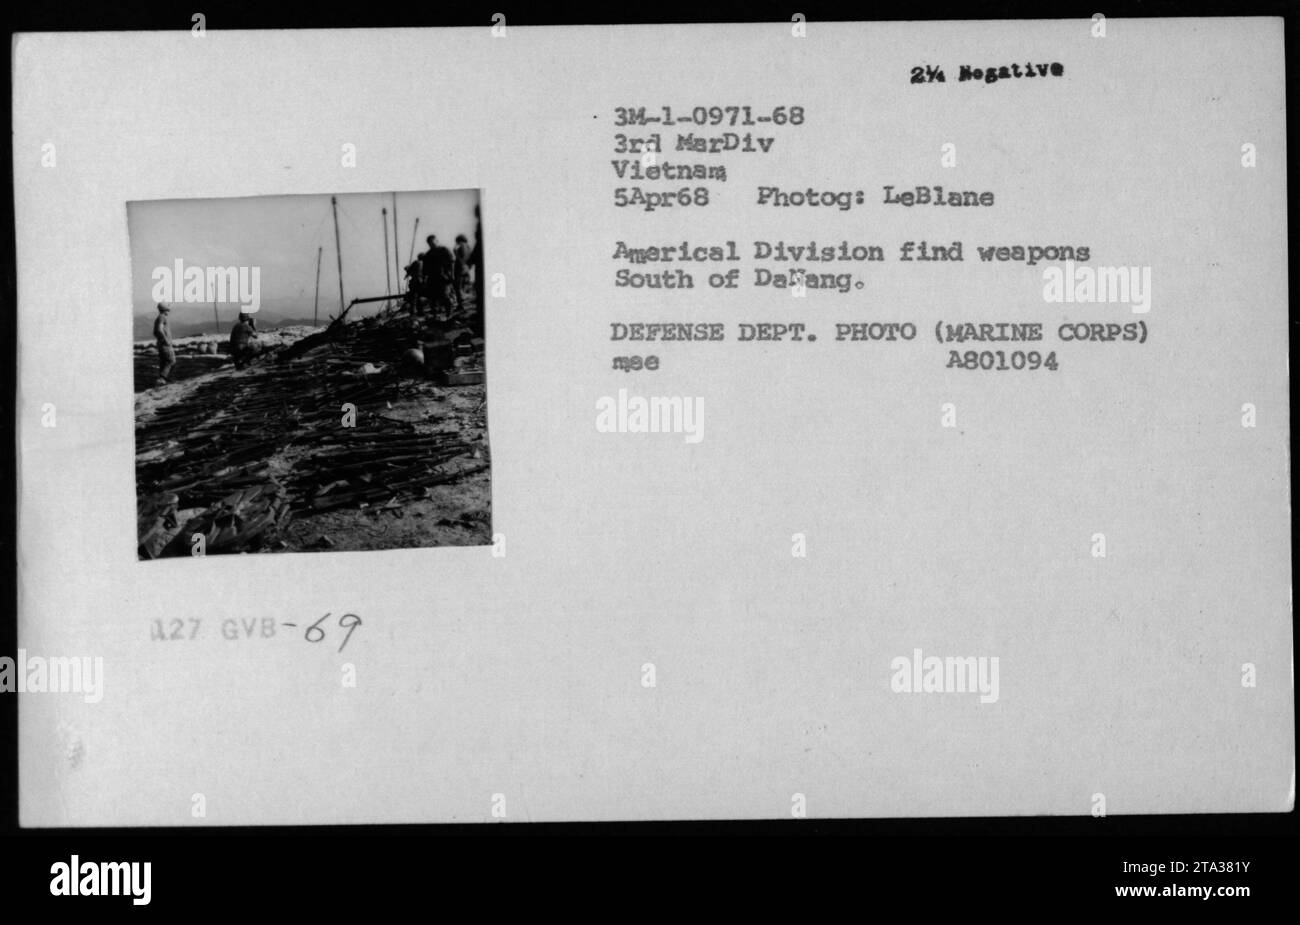 US-Marines von der Americal Division untersuchen am 5. April 1968 ein Gefangener Waffen südlich von da Nang in Vietnam. Das Foto, das der Fotograf LeBlane aufgenommen hat, ist ein Beweis für militärische Aktivitäten zu dieser Zeit. Stockfoto